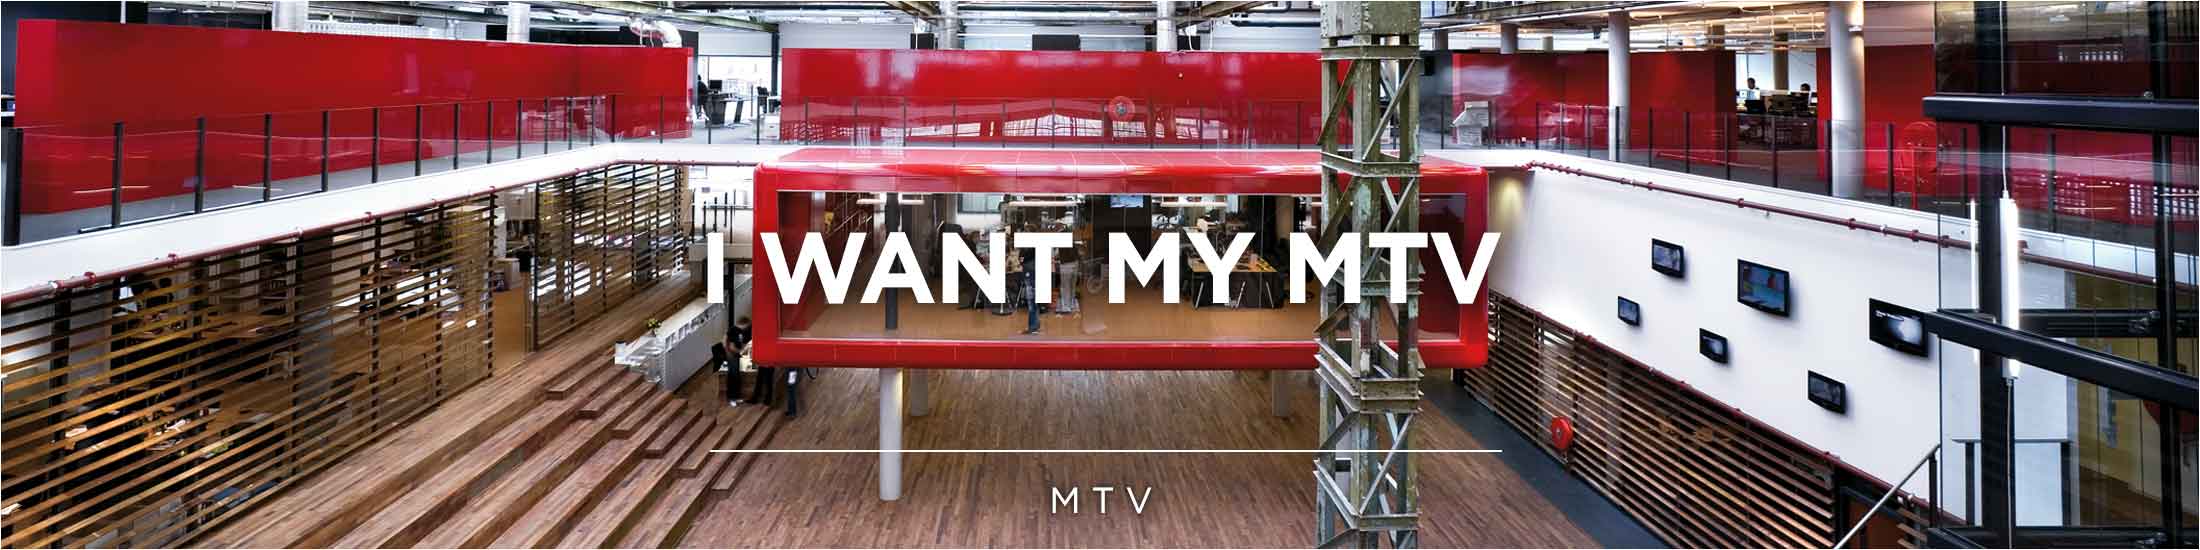 MTV HQ